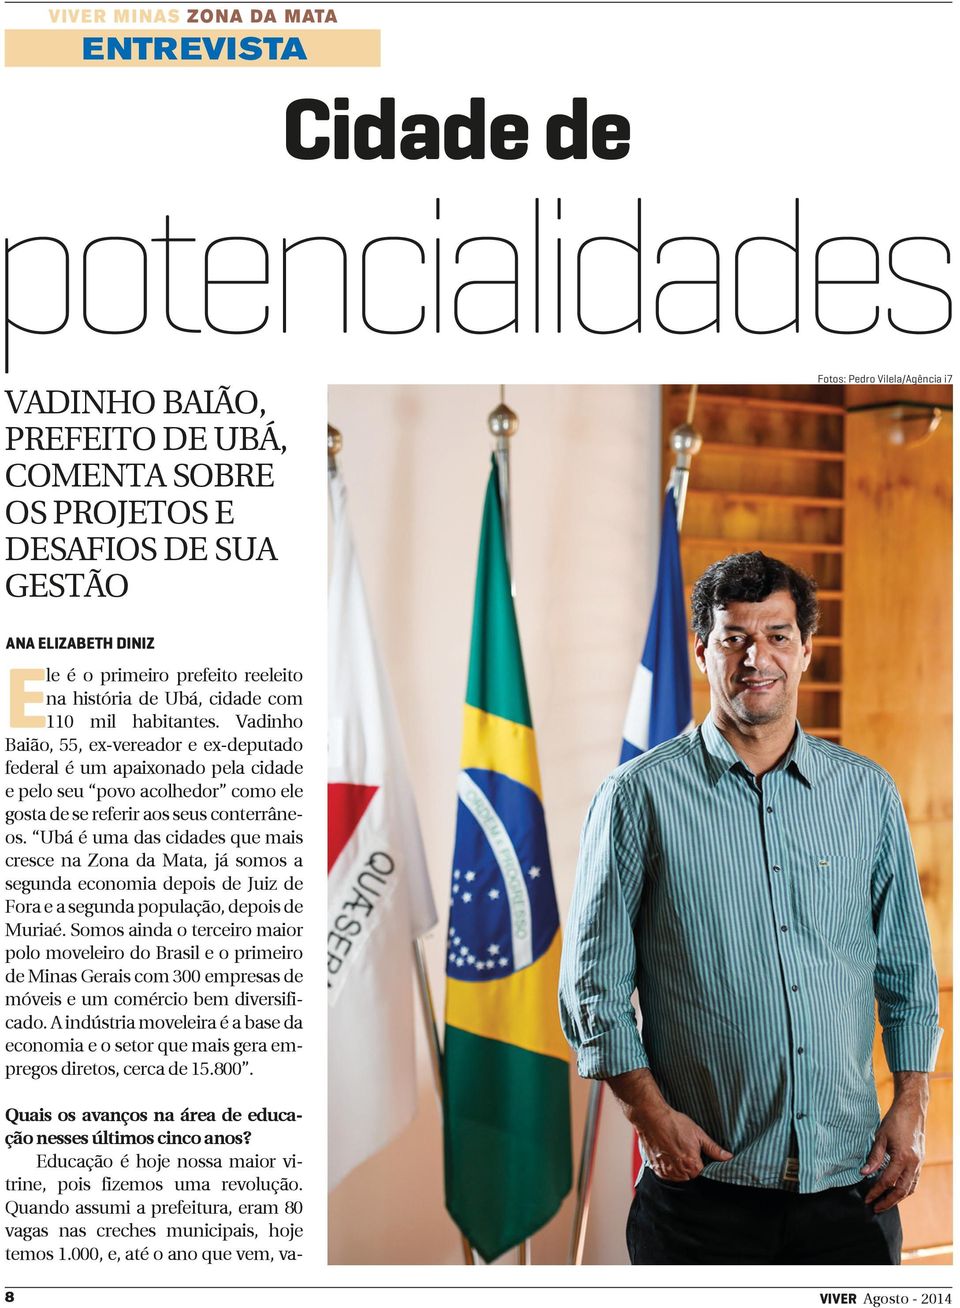 Vadinho Baião, 55, ex-vereador e ex-deputado federal é um apaixonado pela cidade e pelo seu povo acolhedor como ele gosta de se referir aos seus conterrâneos.